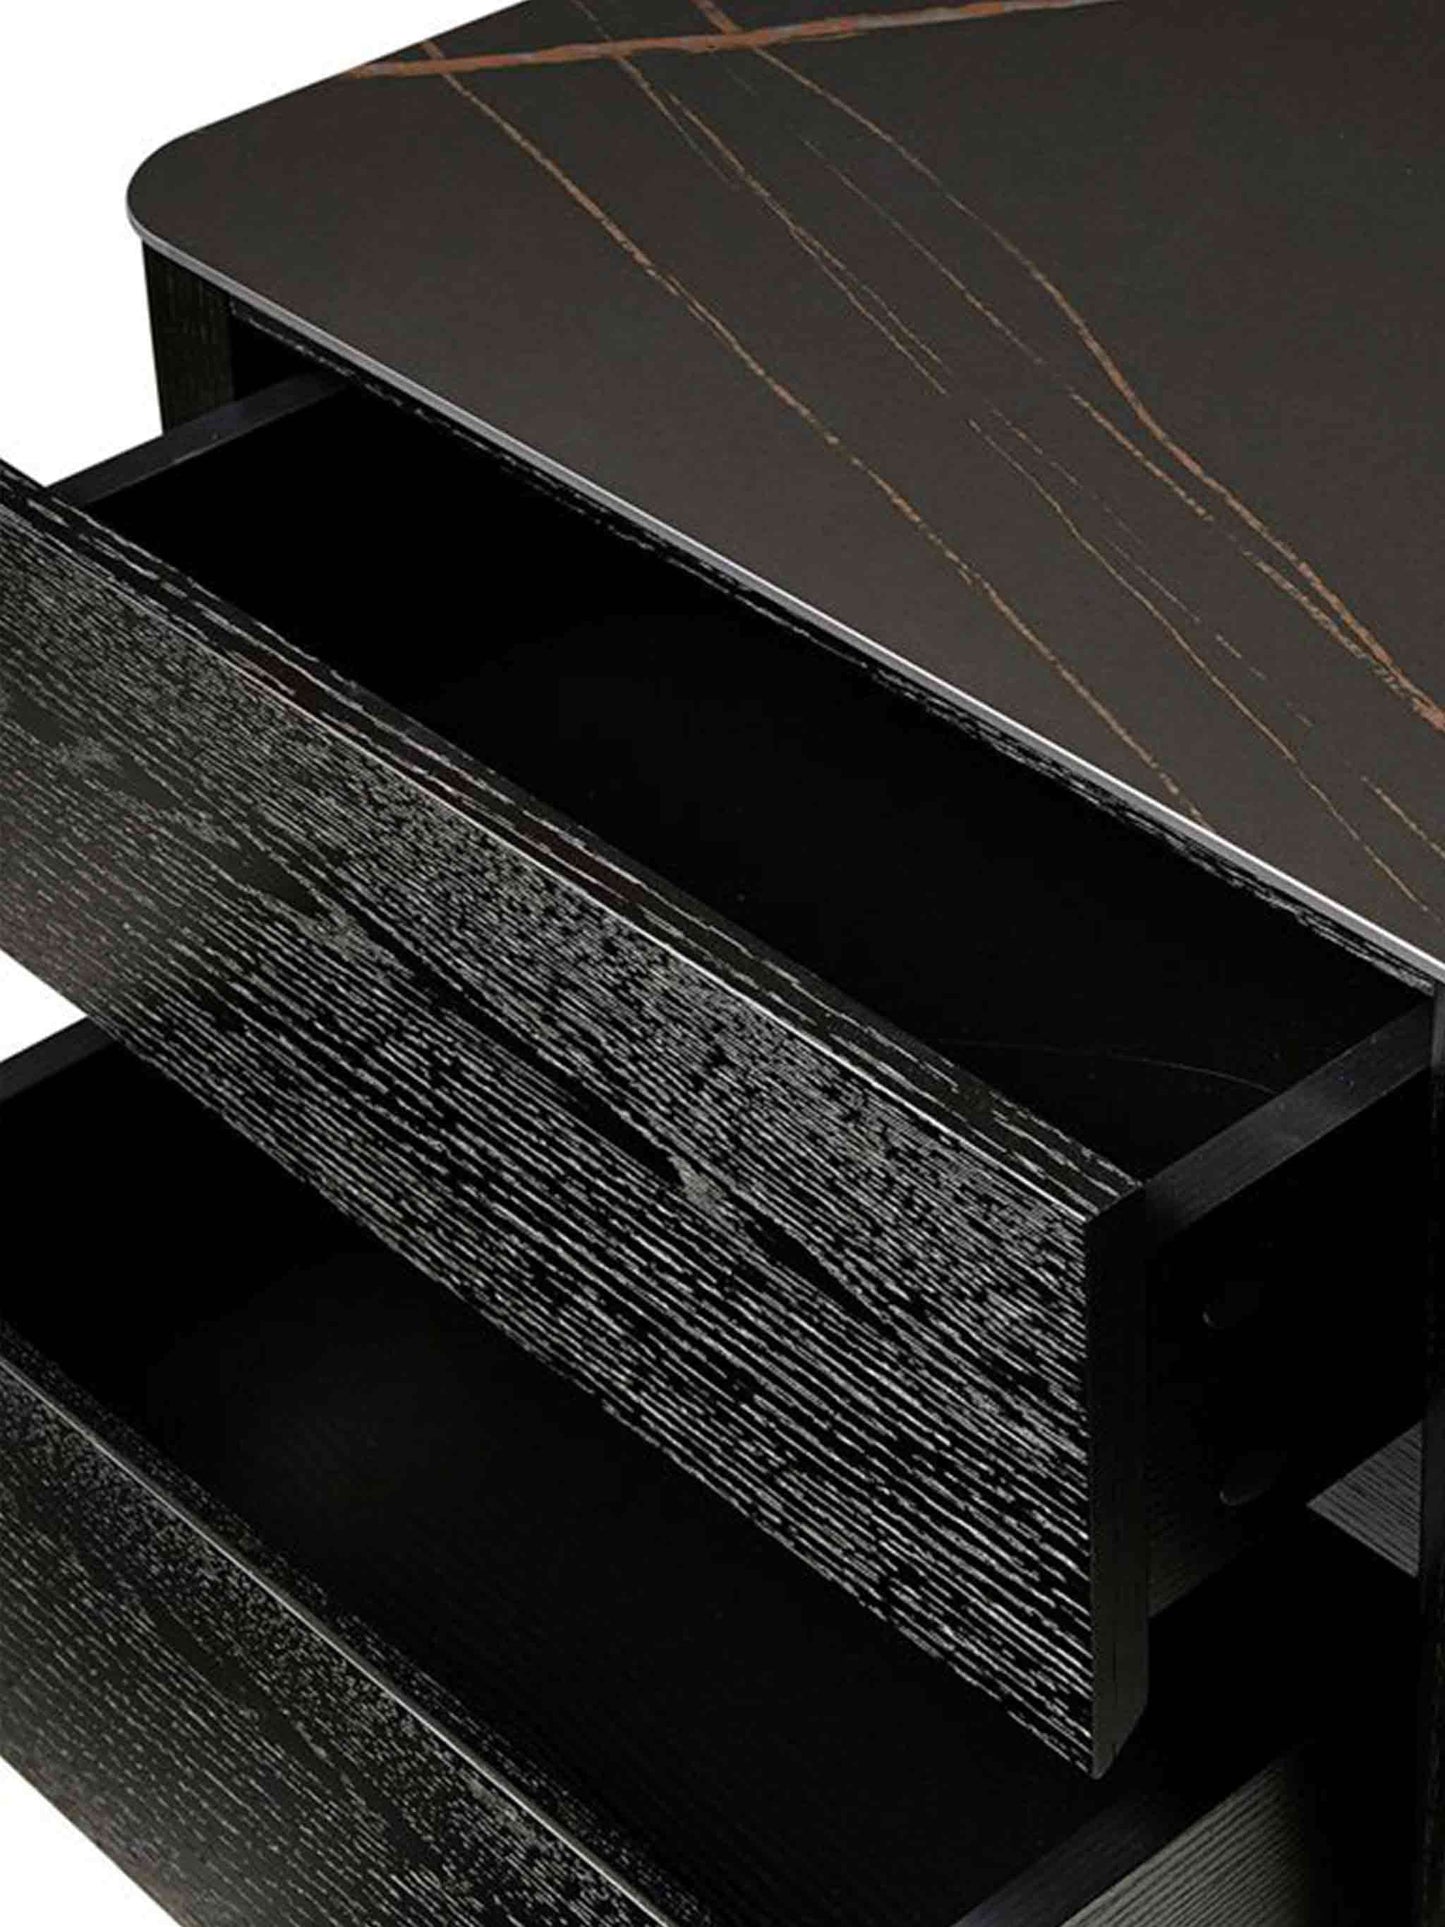 Veneer Clayton Bedside Table  Black Marble Dark Wooden Ceramic